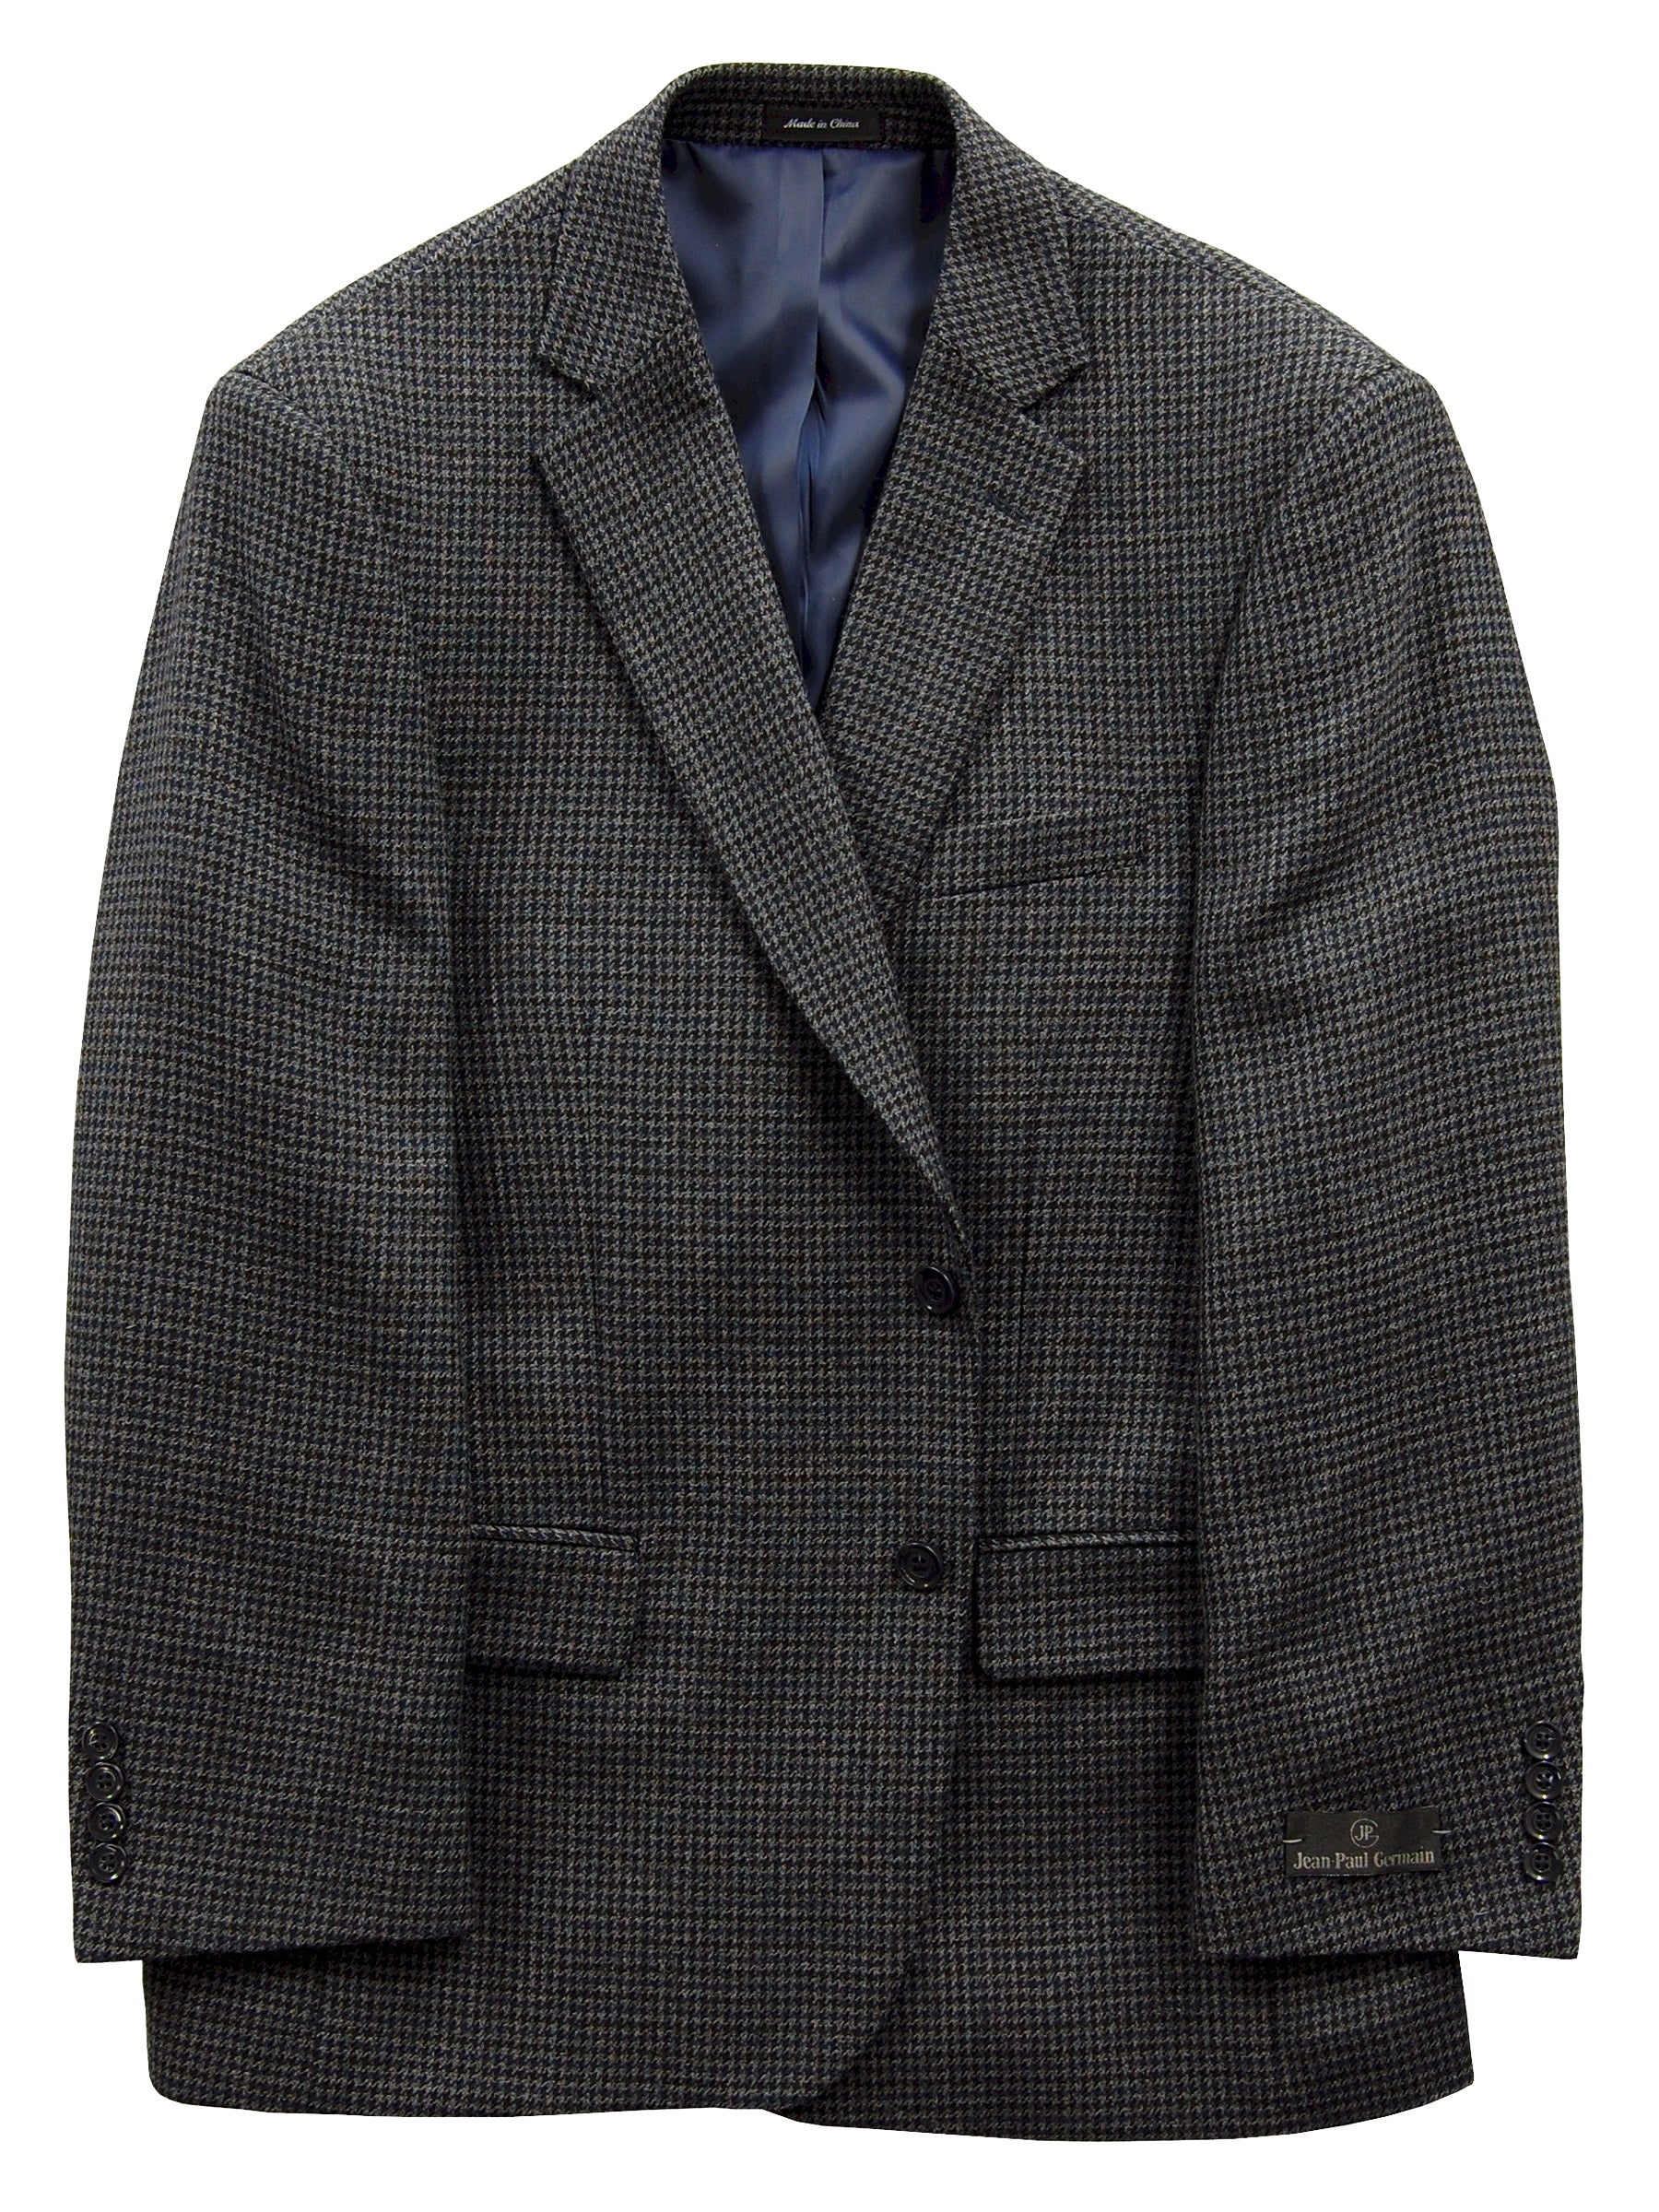 Jean-Paul Germain Wool Sport Coat by Harmony - Tall Man Sizes